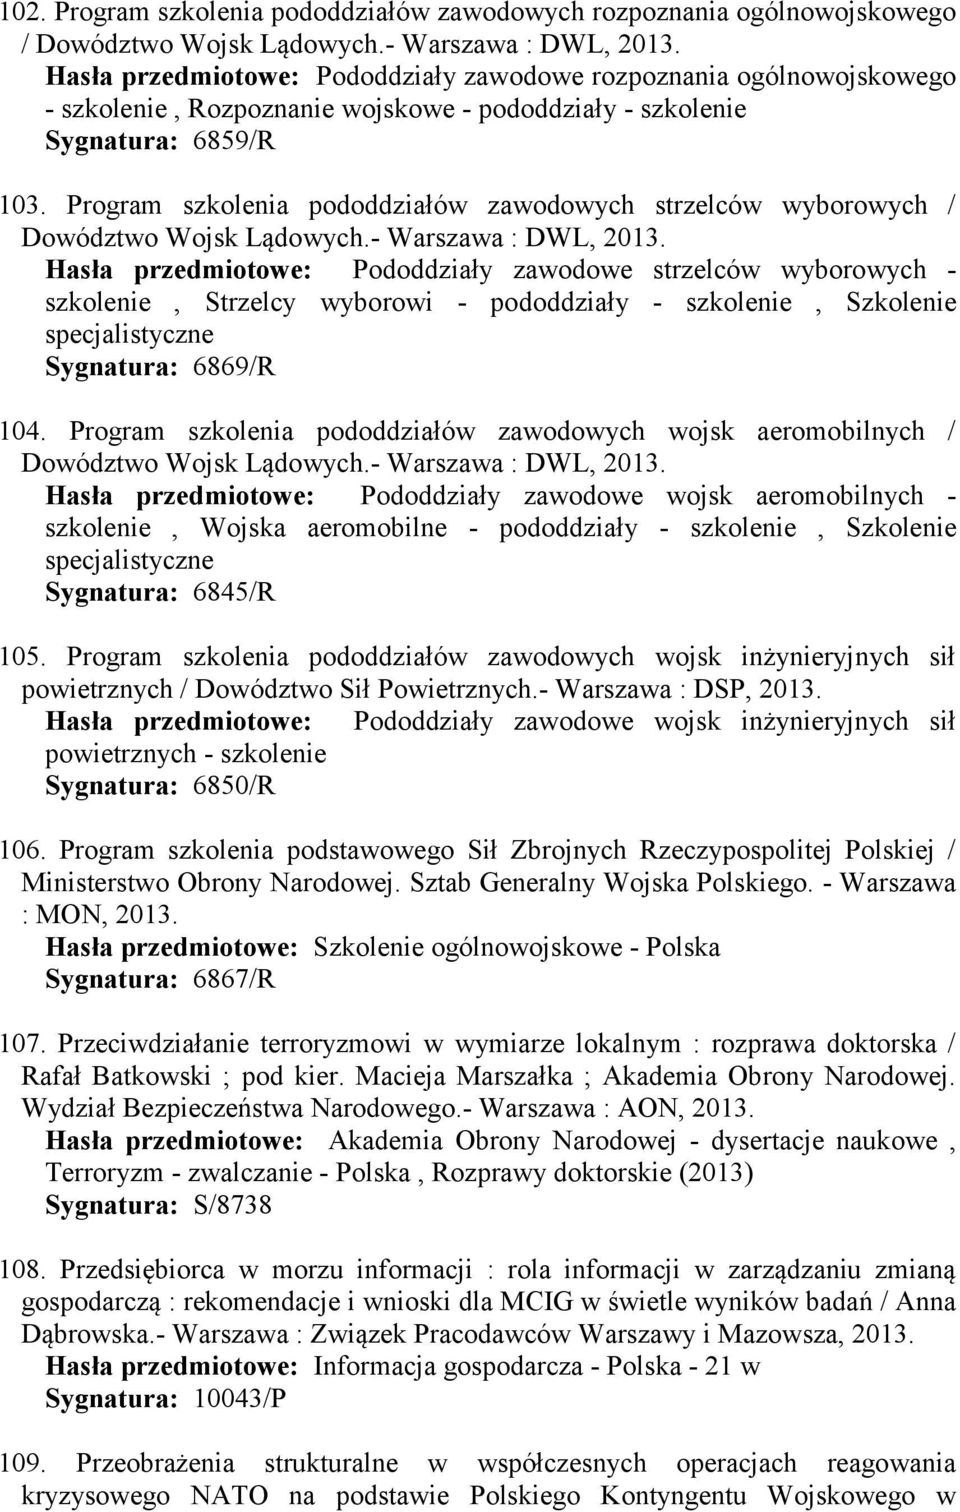 Program szkolenia pododdziałów zawodowych strzelców wyborowych / Dowództwo Wojsk Lądowych.- Warszawa : DWL, 2013.